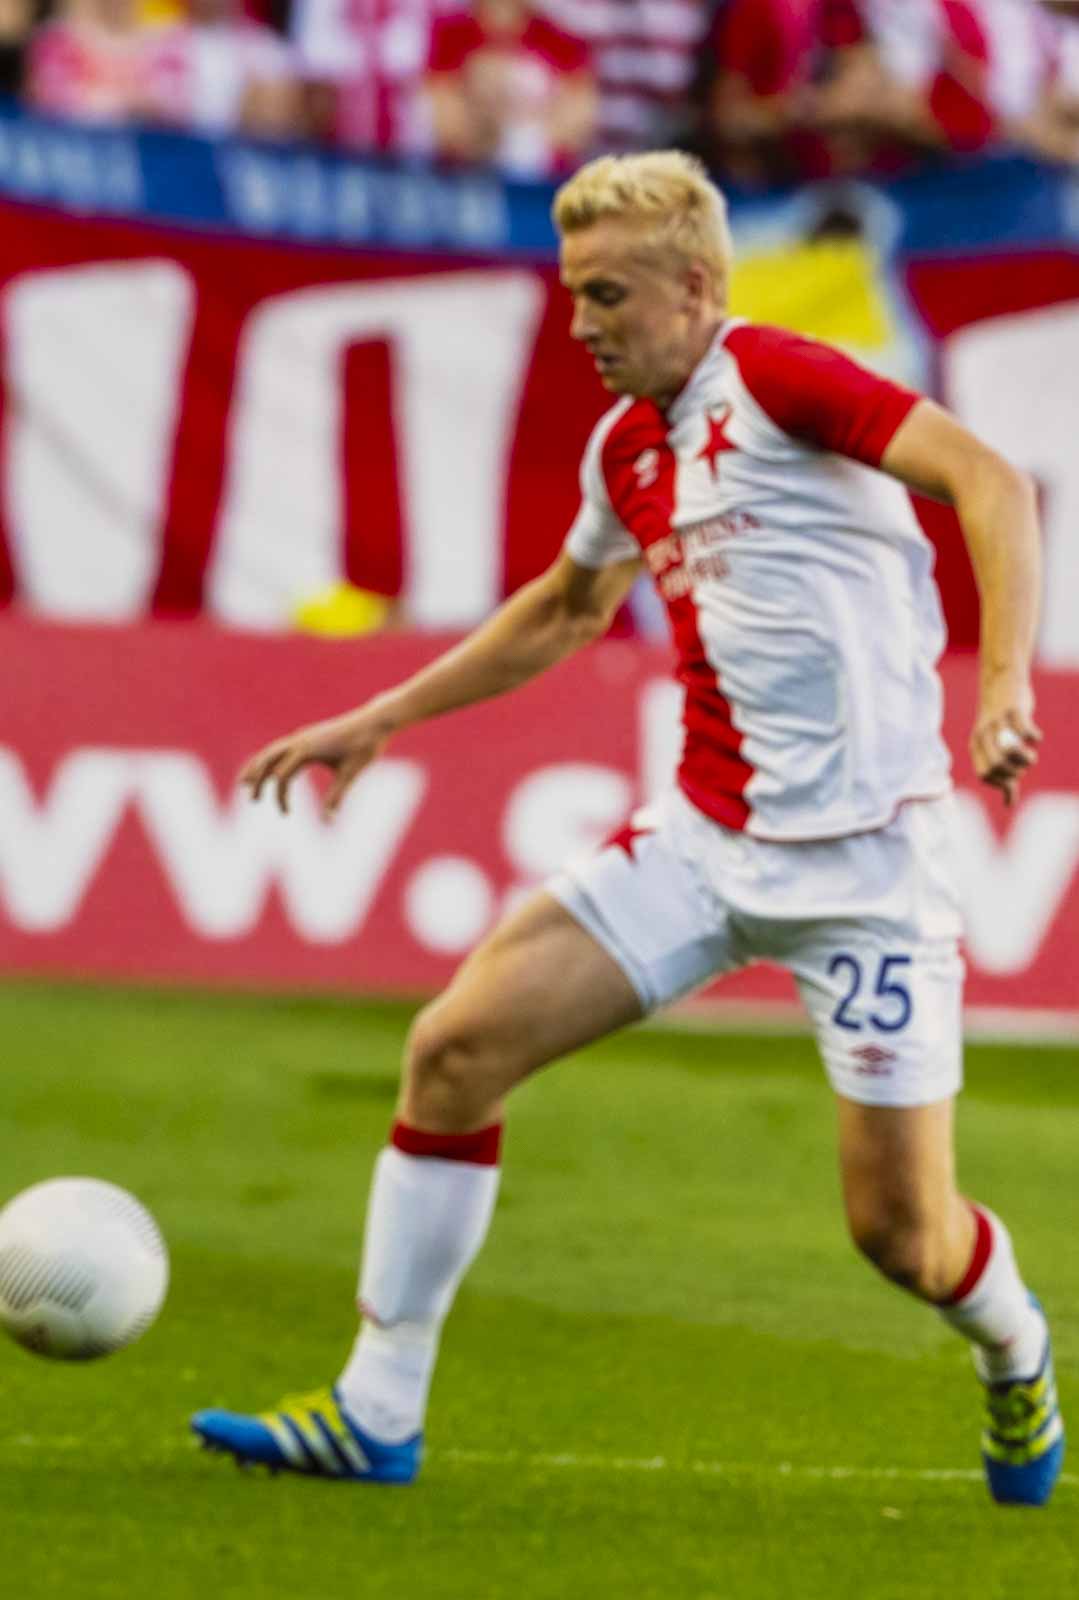 Kartička fotbal, Michal Frydrych, Slavia Praha, 25